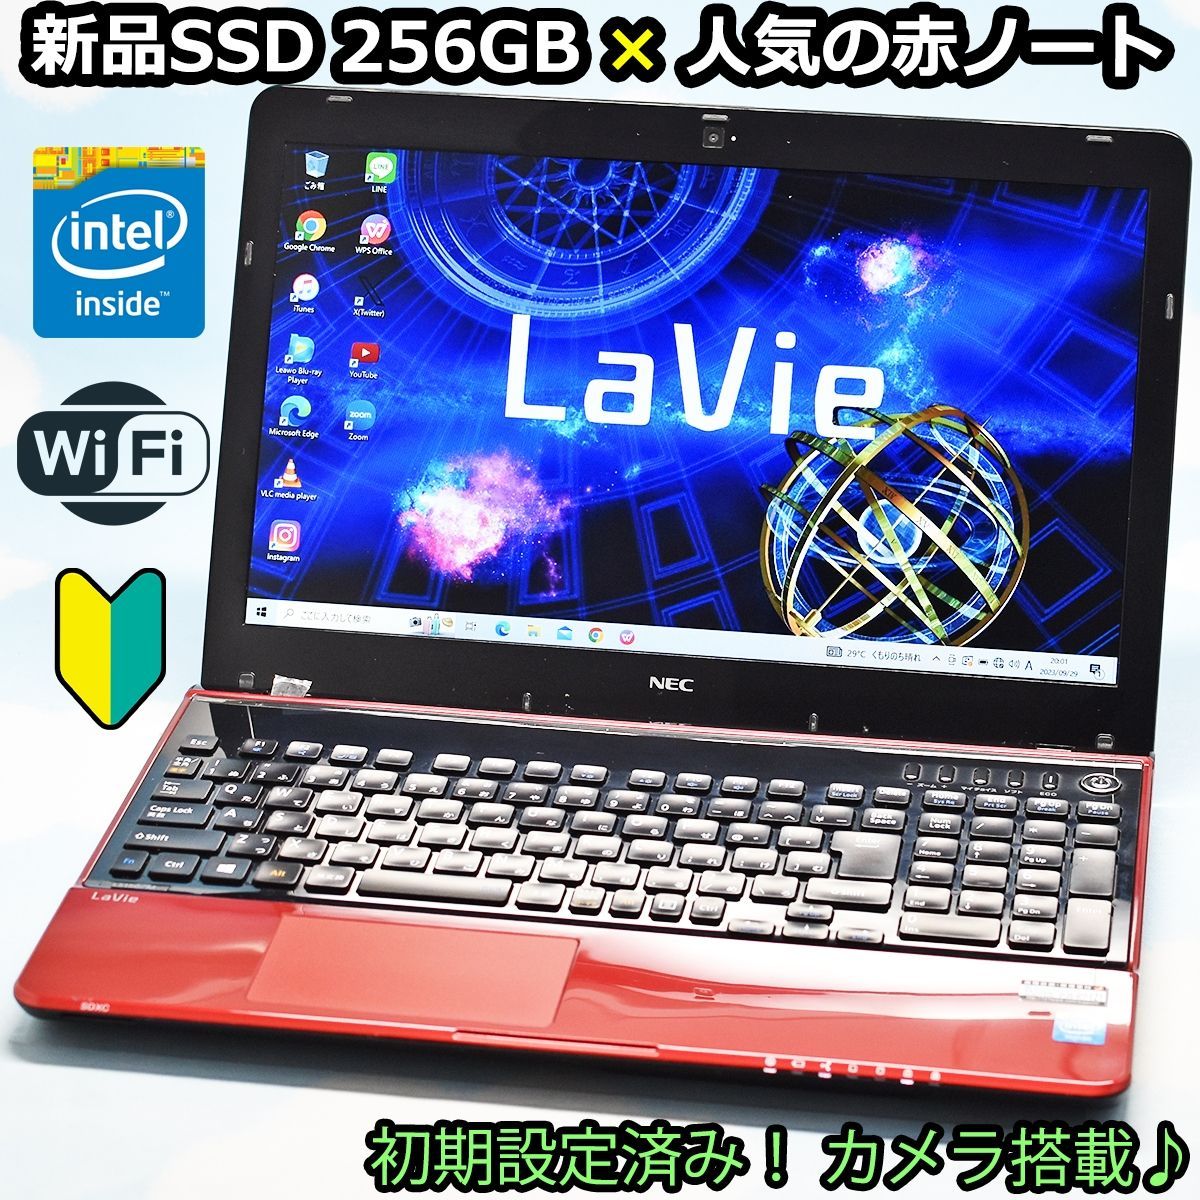 新品SSD 256GB、カメラ、WiFi 搭載♪ NEC LaVie リモート 大特価 赤